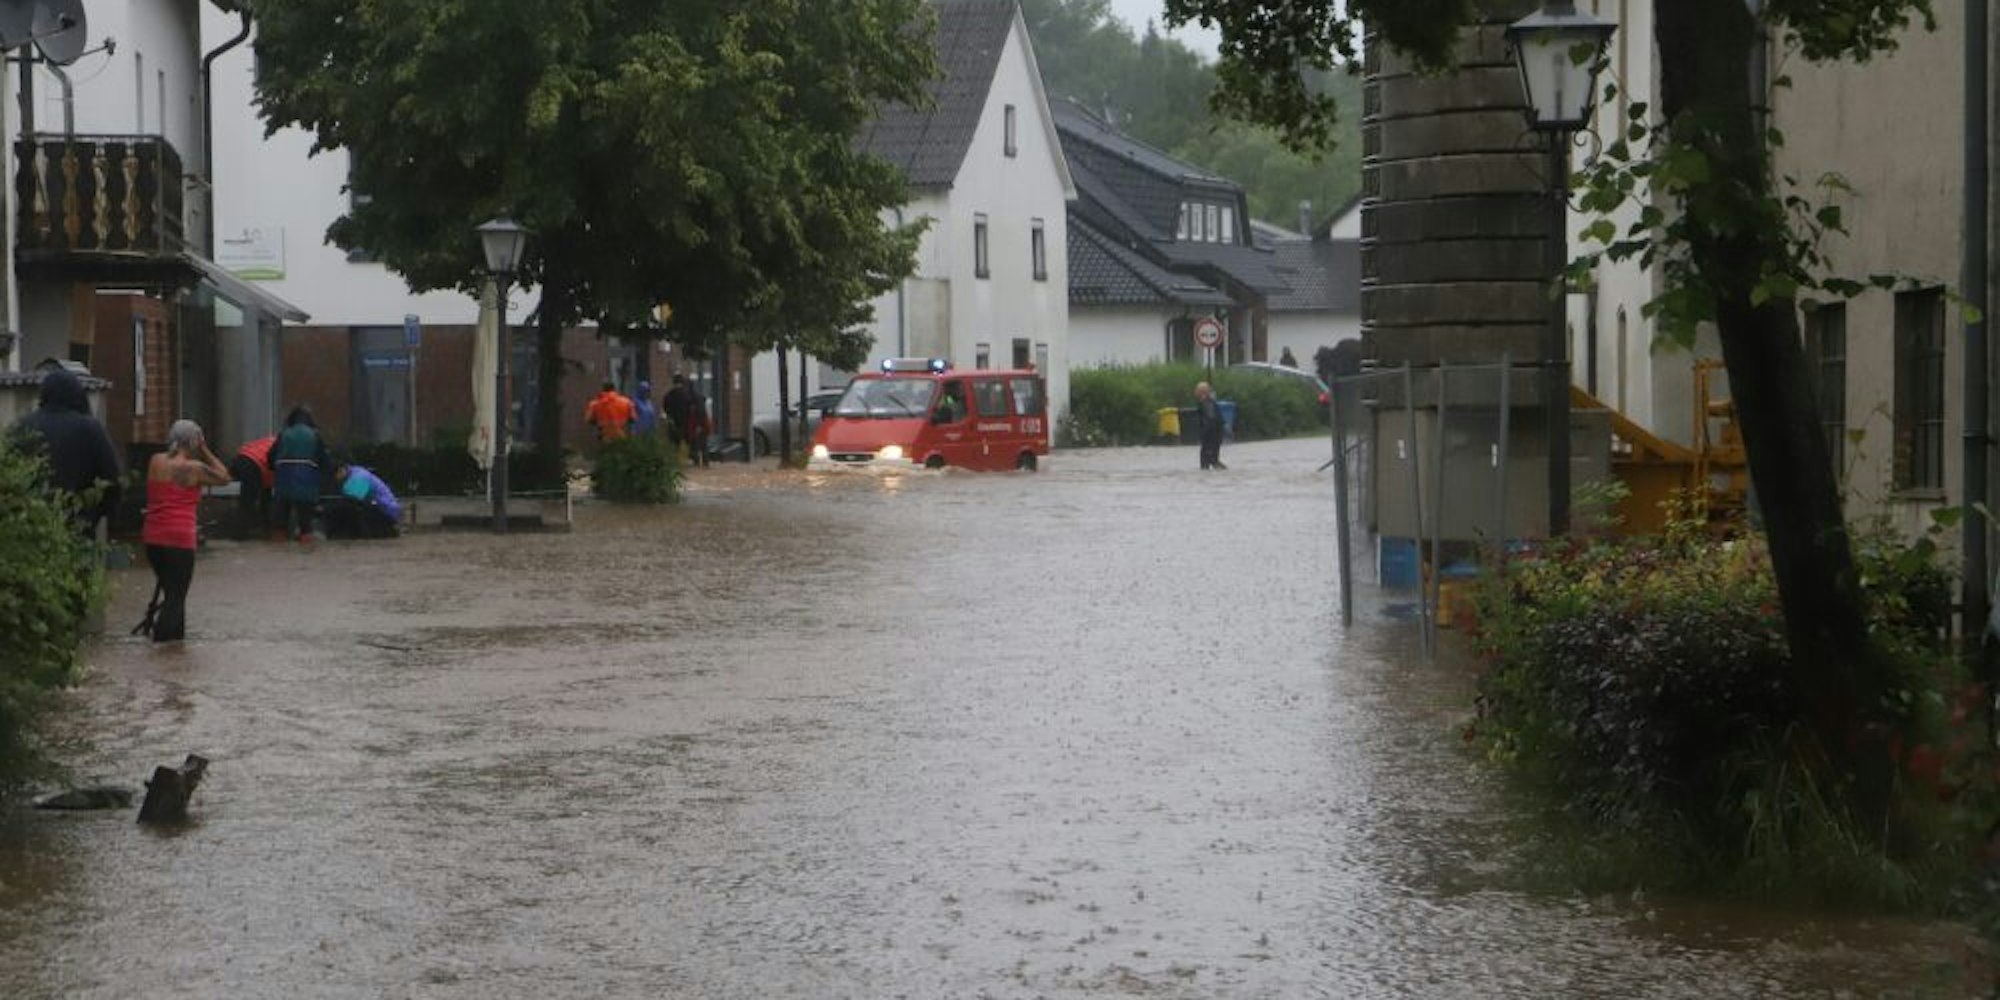 In den Orten, wie hier in Nettersheim, entwickelten sich die Straßen am 14. Juli zu Seen.